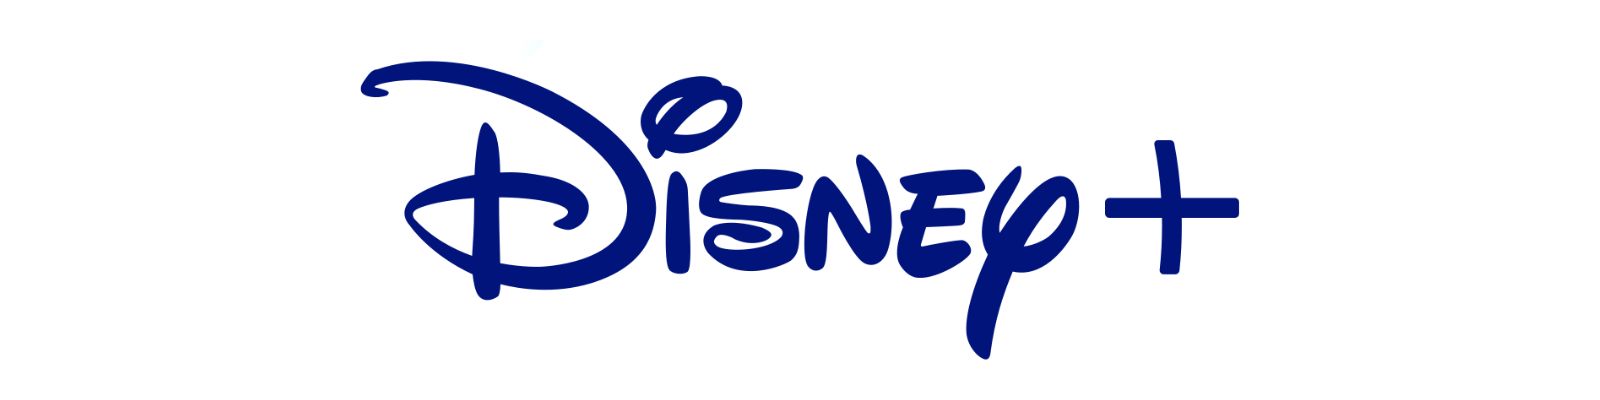 Disney+ é confiável? A Verdade que Nunca te Contaram!